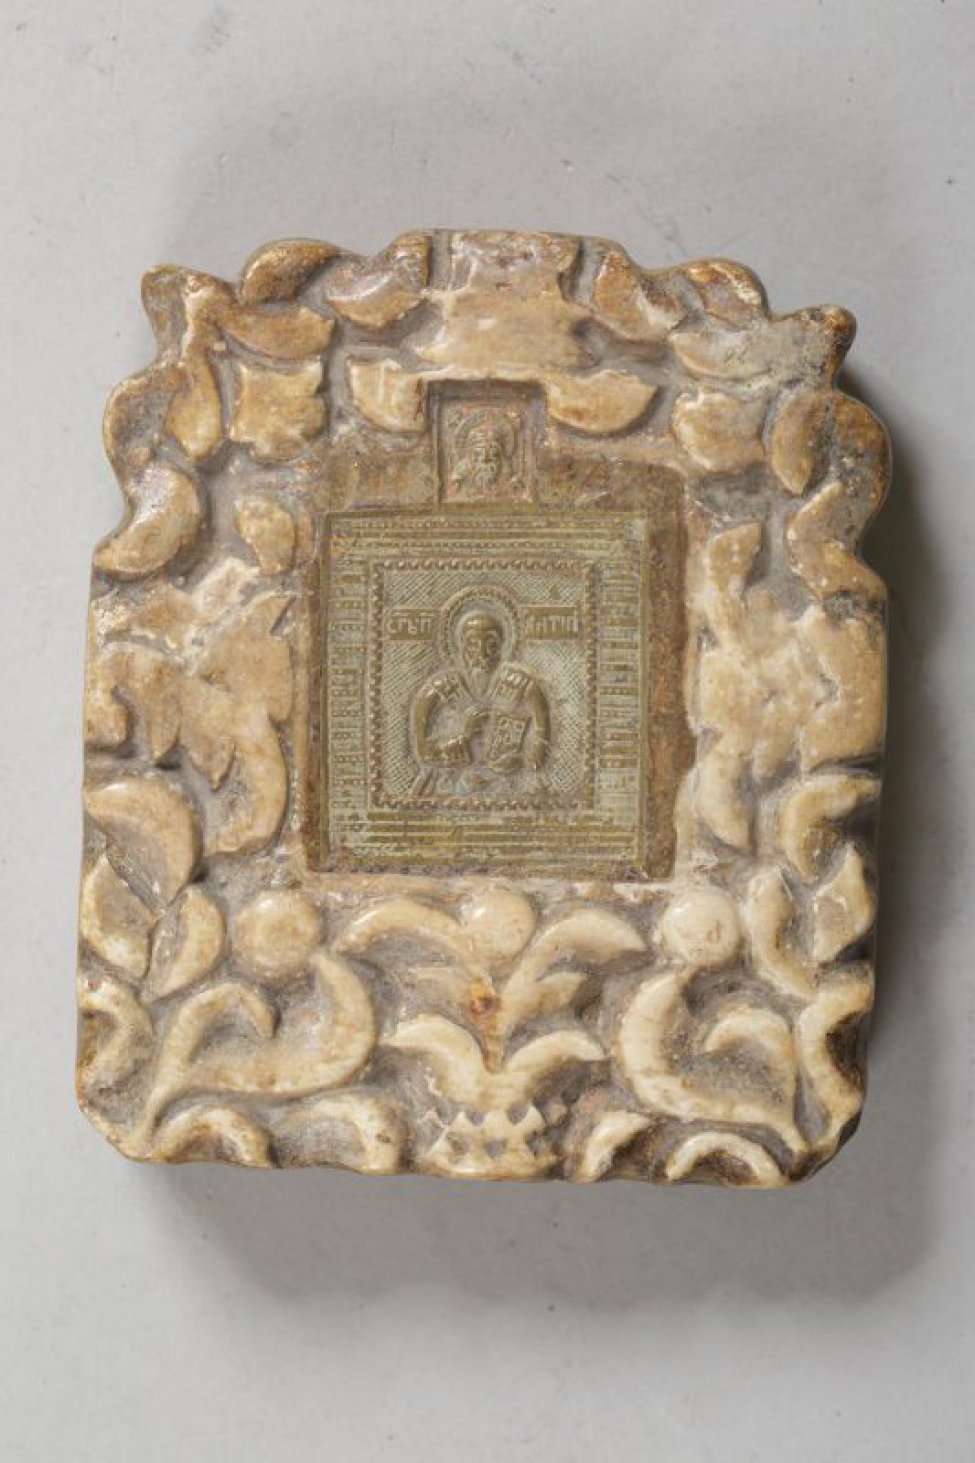 Литая икона в оправе из резного камня, с навершием "Спас нерукотворный". В центре изображен святой с благословляющим жестом правой руки и Евангелием в левой руке.